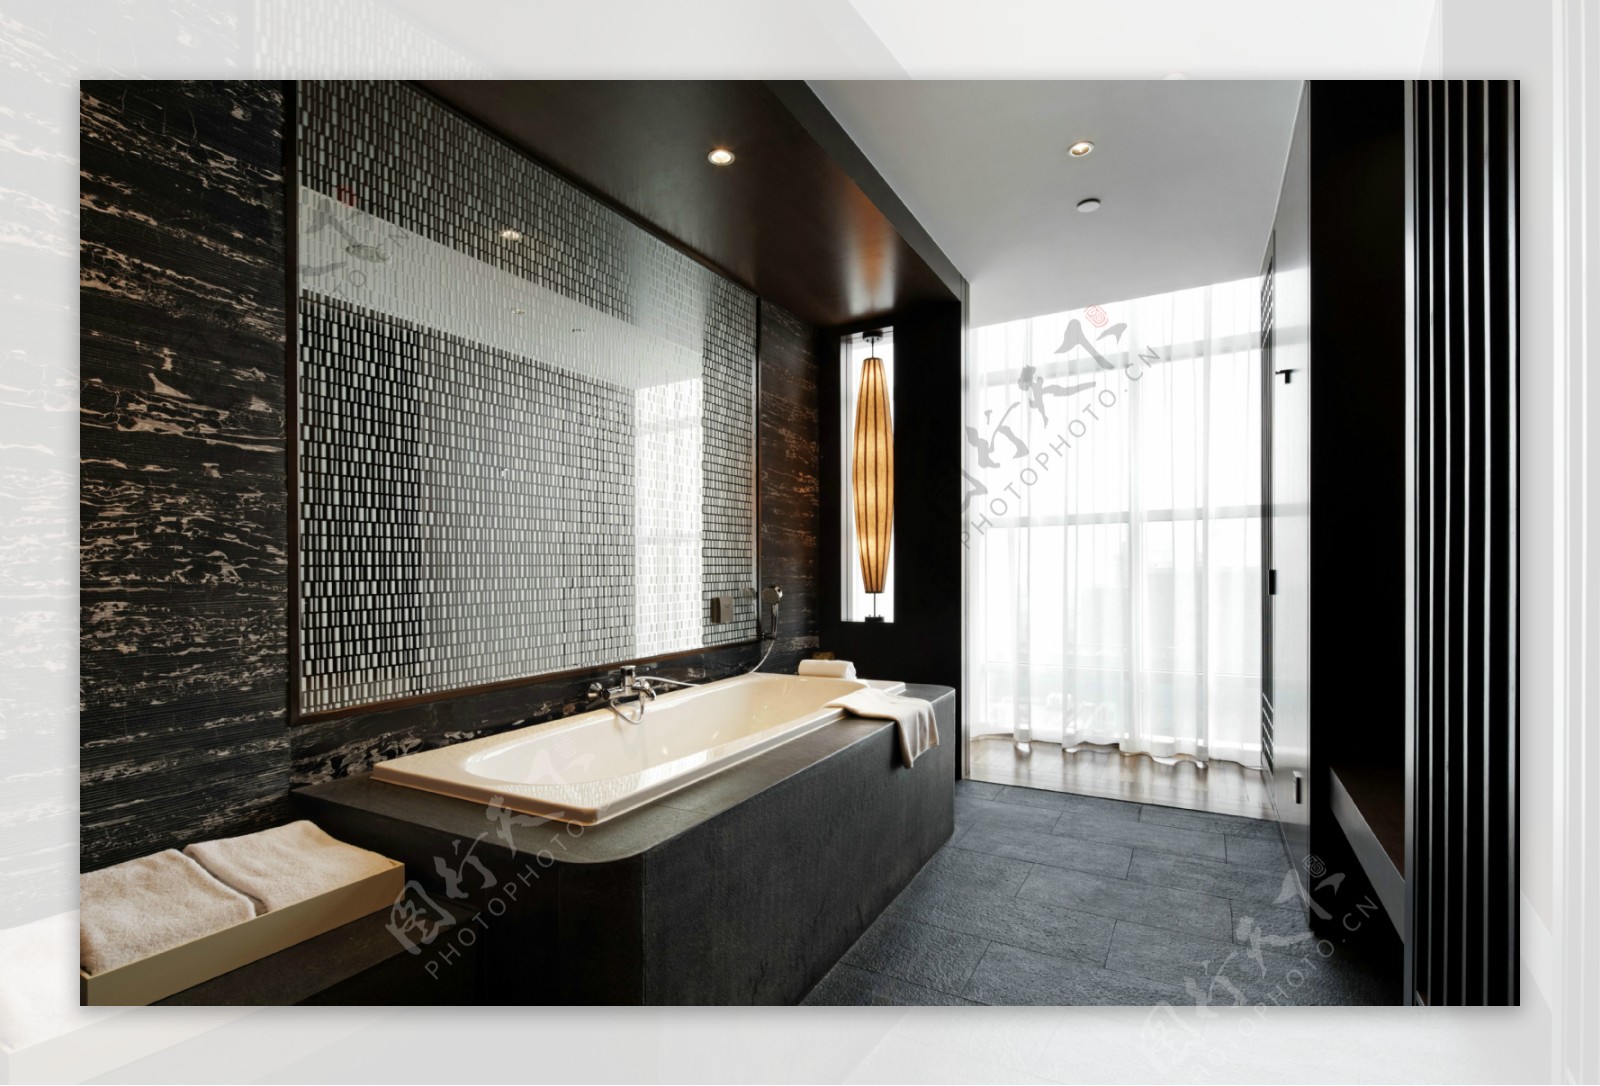 中式简约室内卫生间浴缸效果图